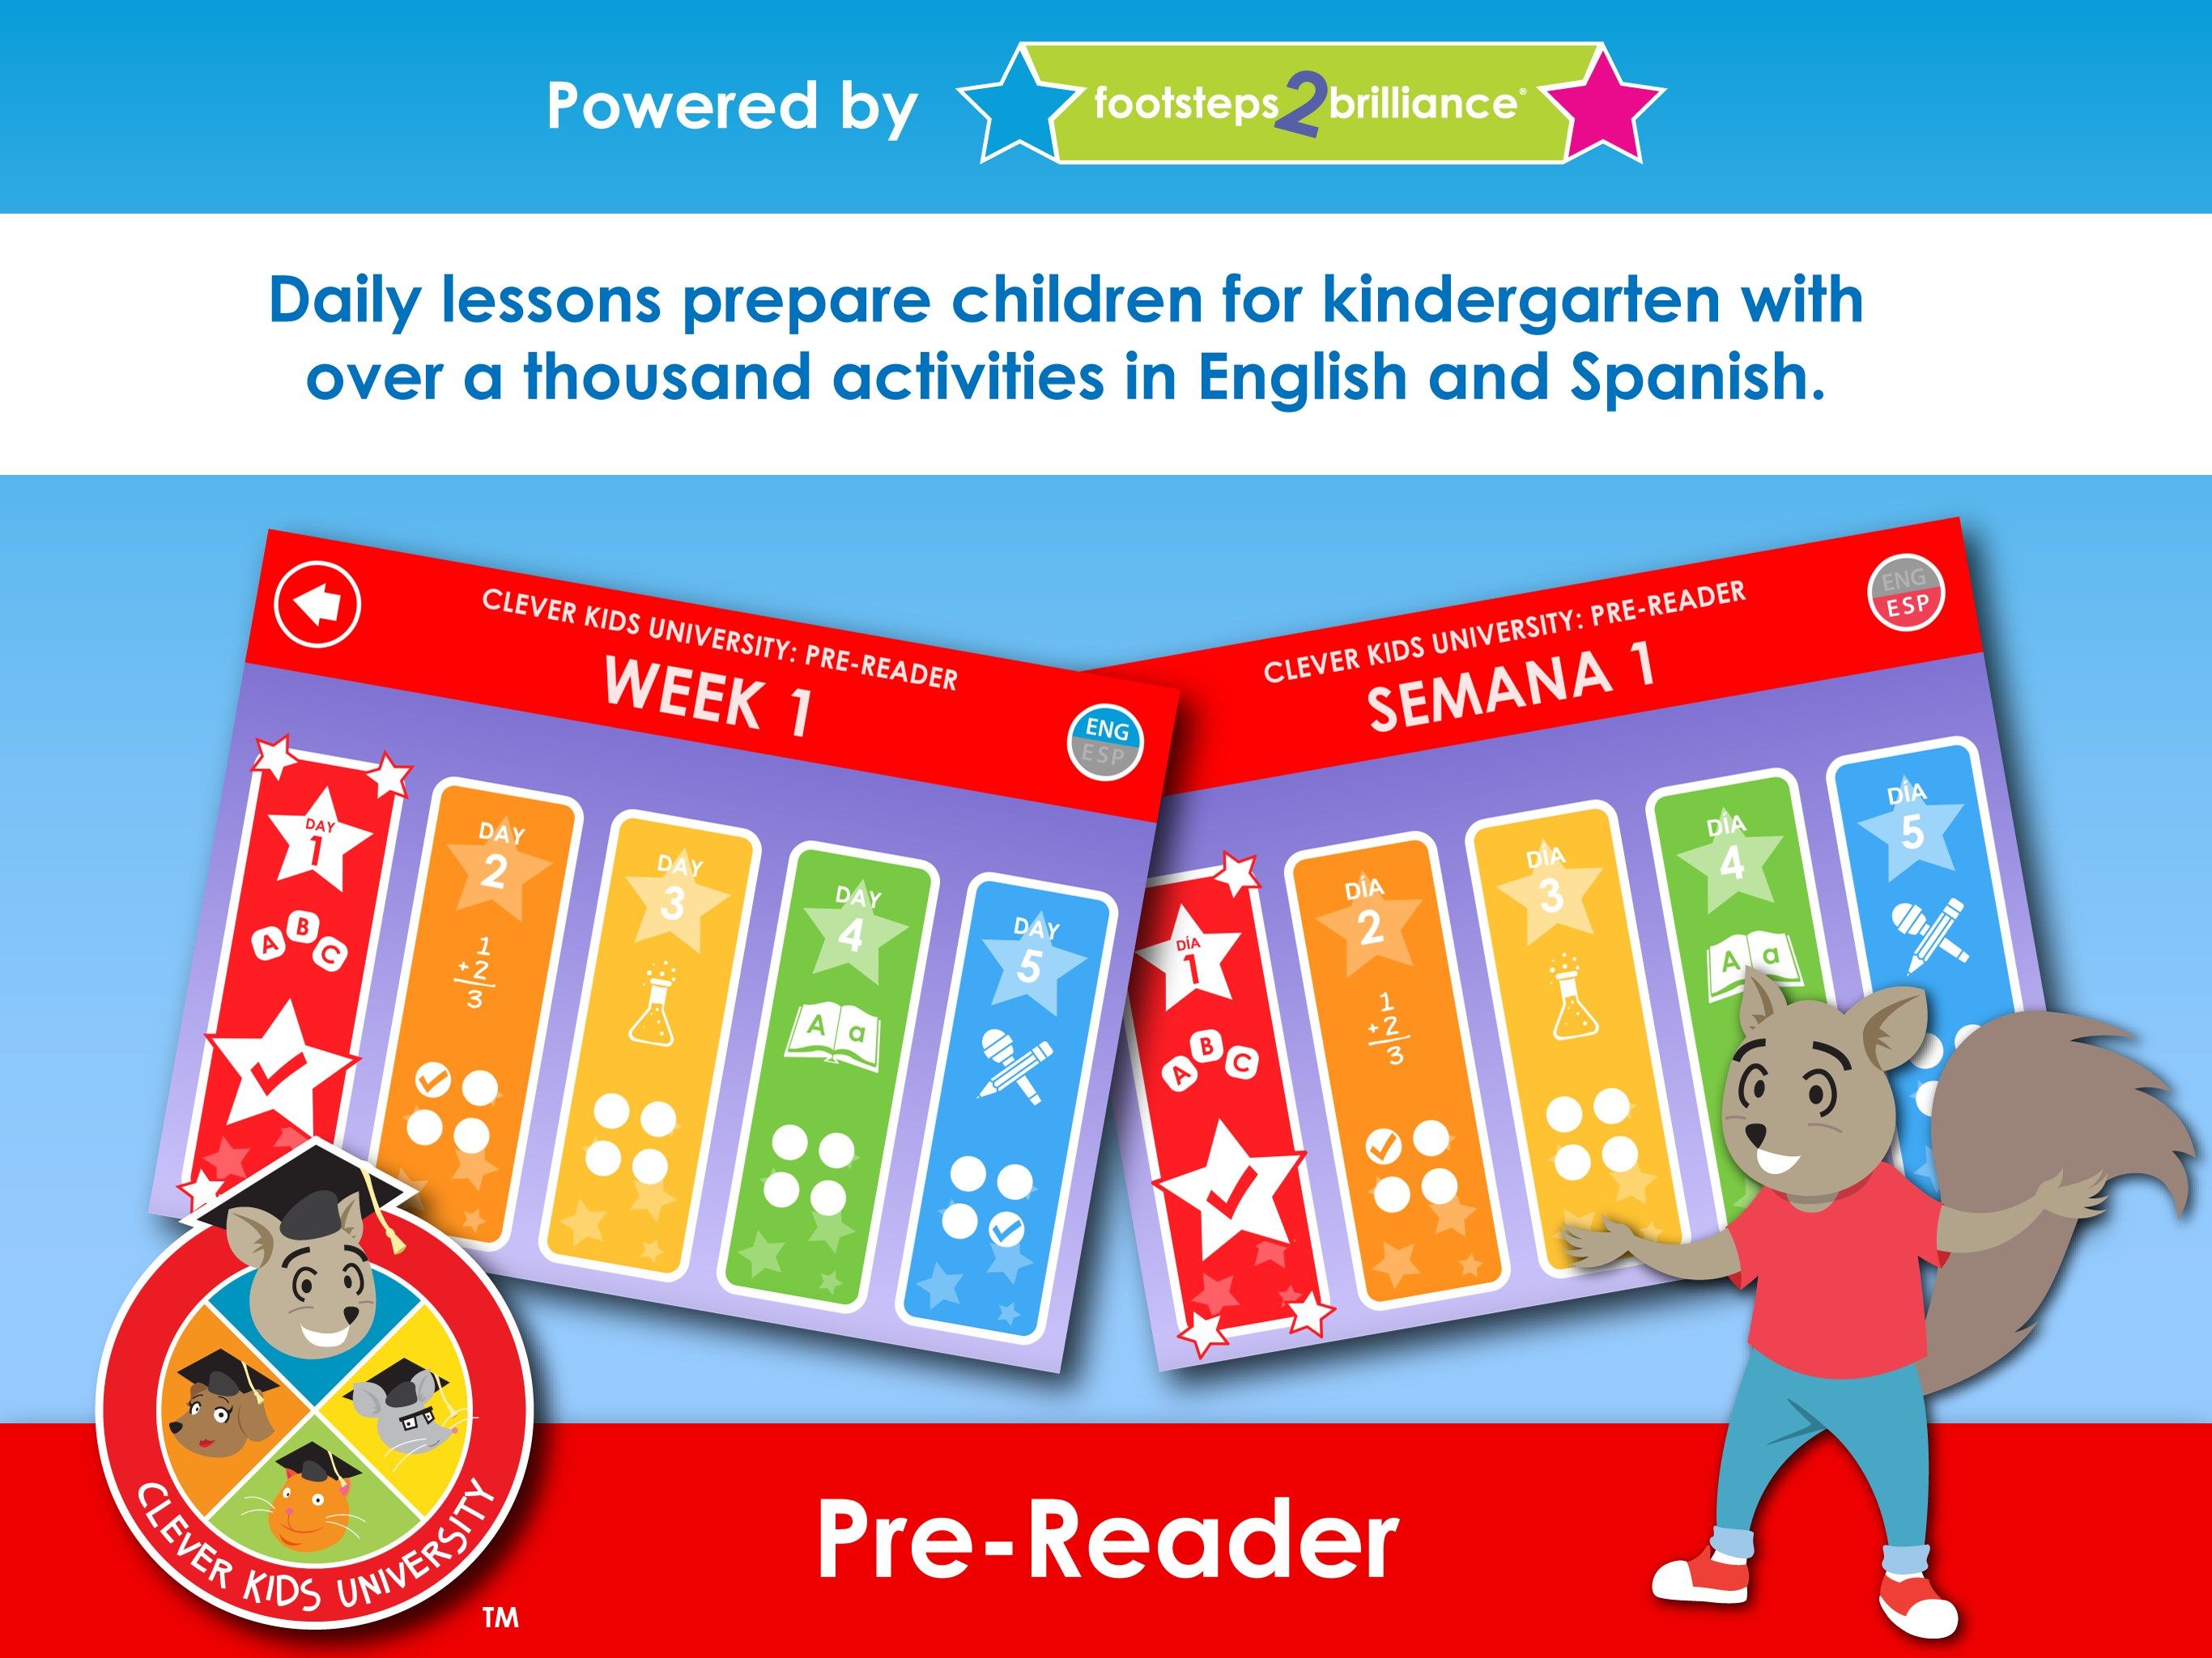 Clever Kids University - Pre-Reader